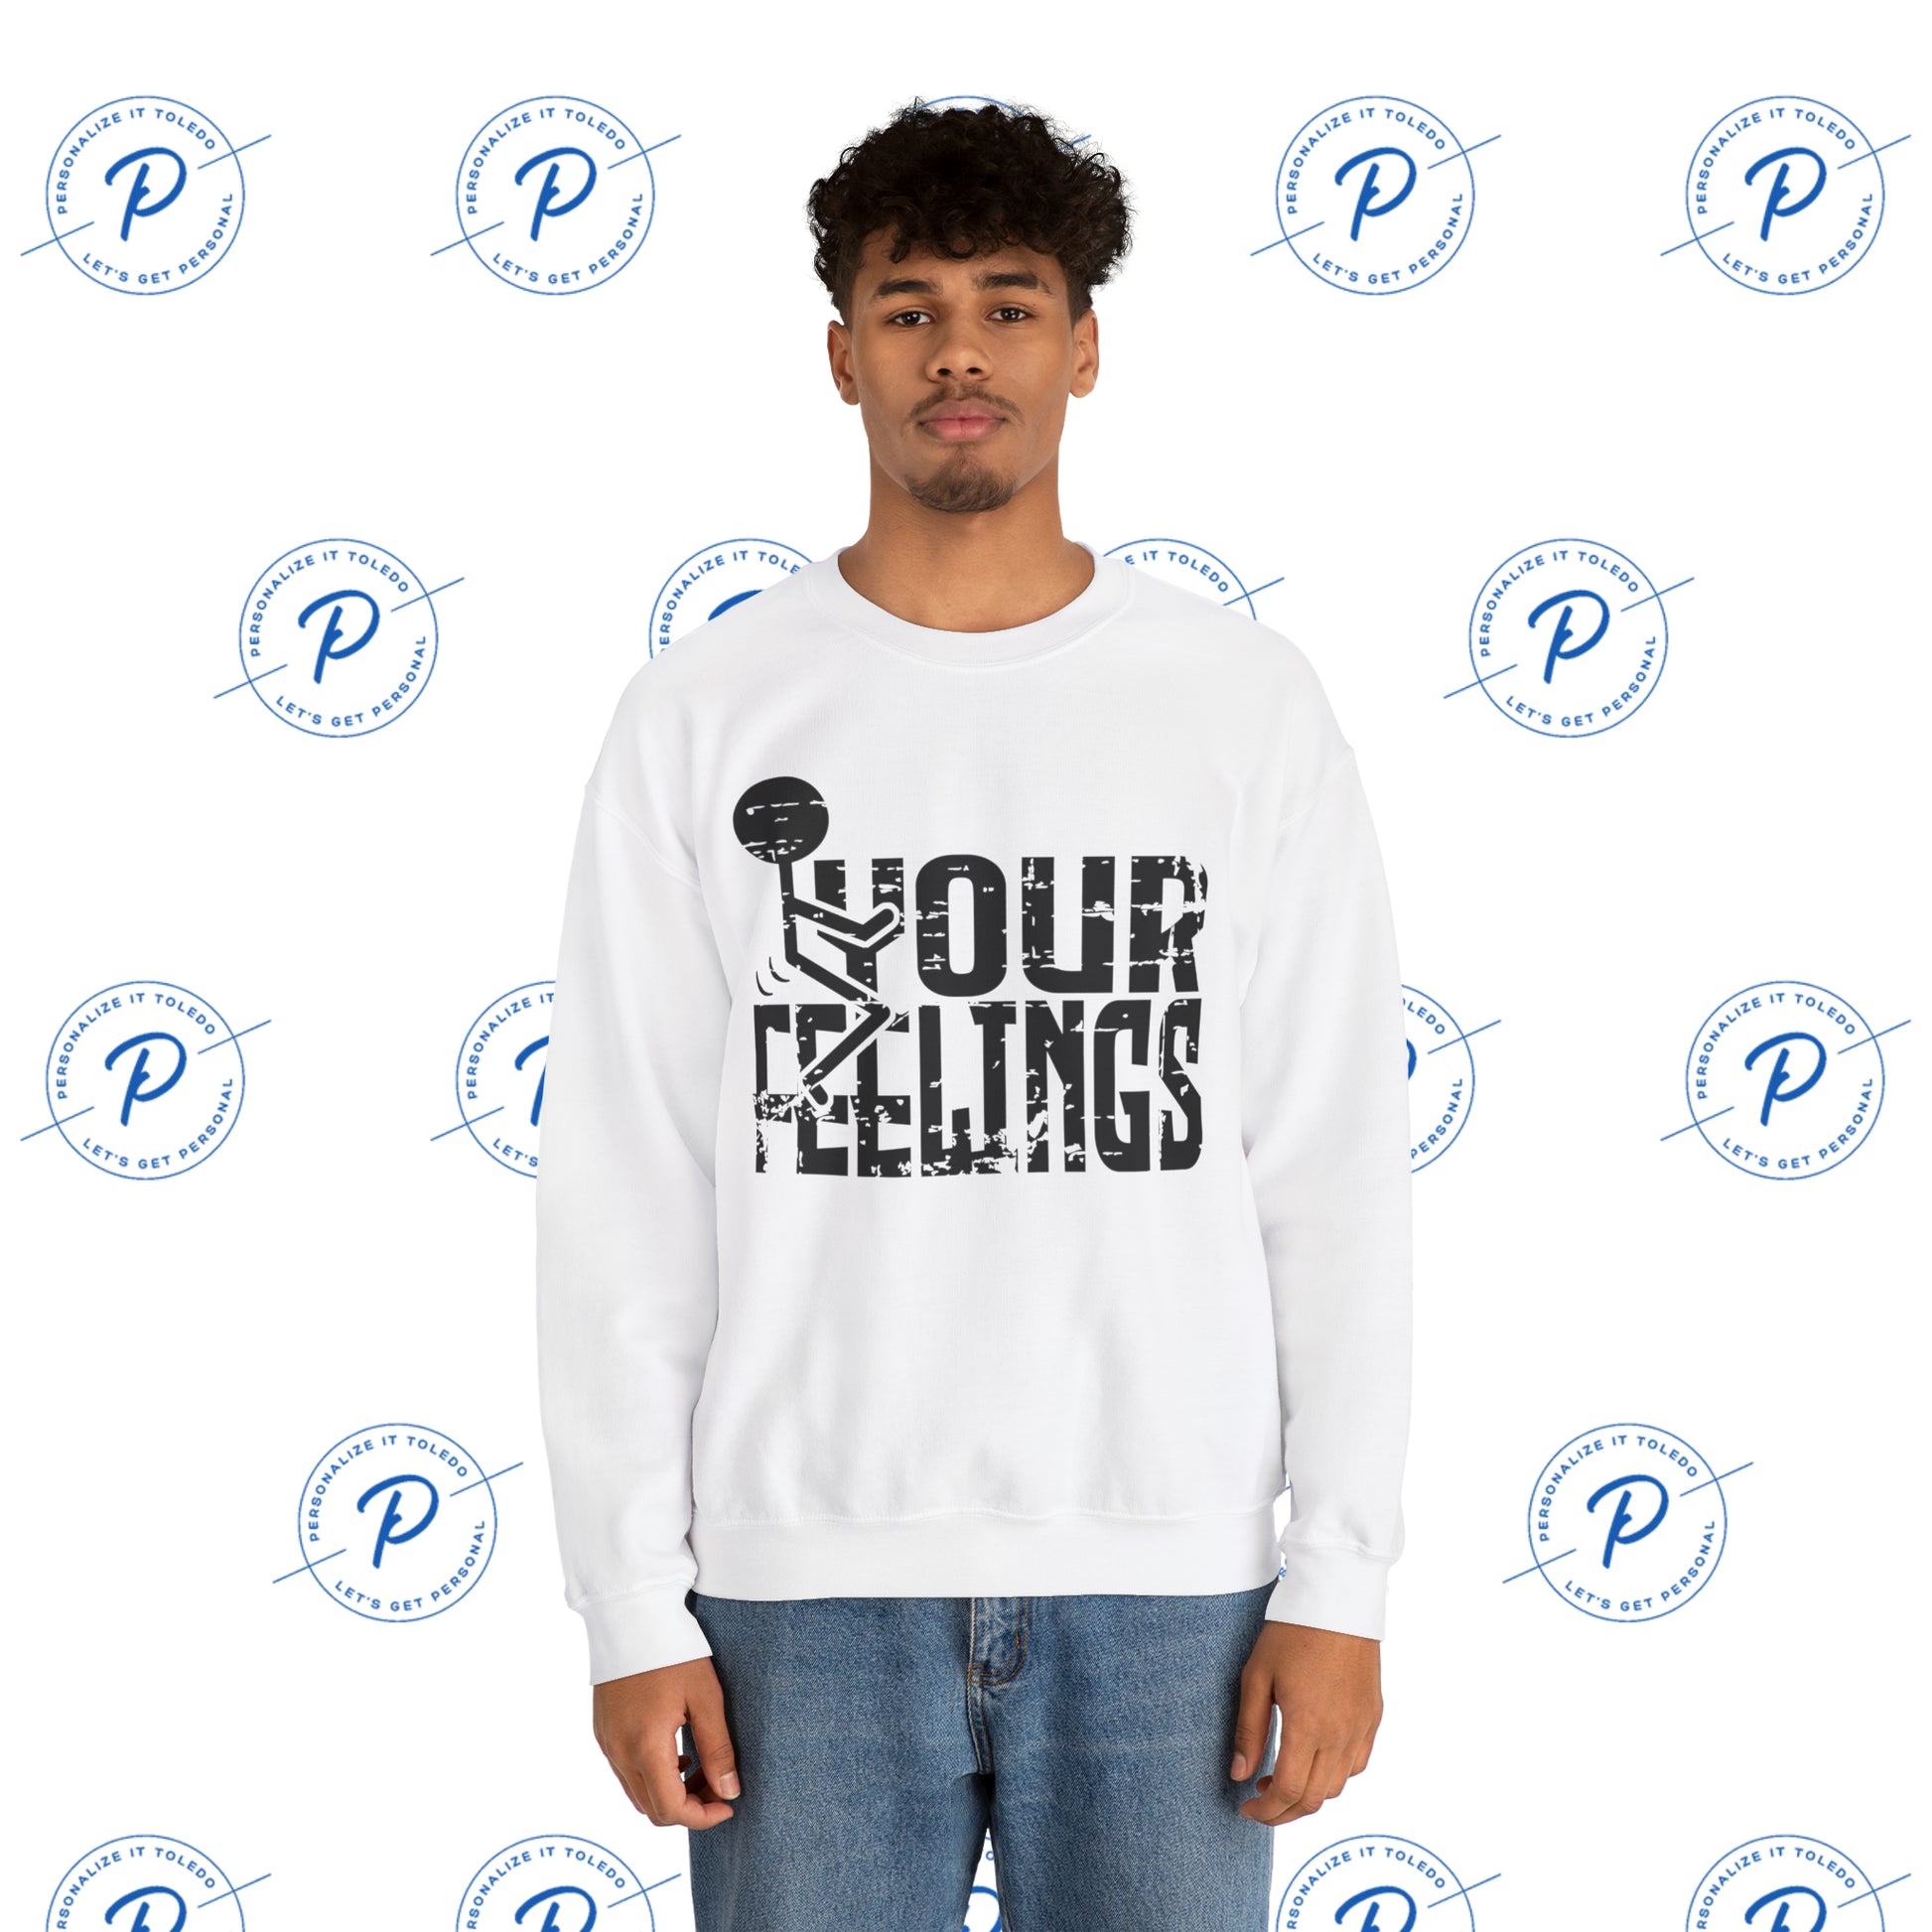 Humorous Your Feelings Sweatshirt - F Your Feelings Sweatshirt - Stick Figure Shirt